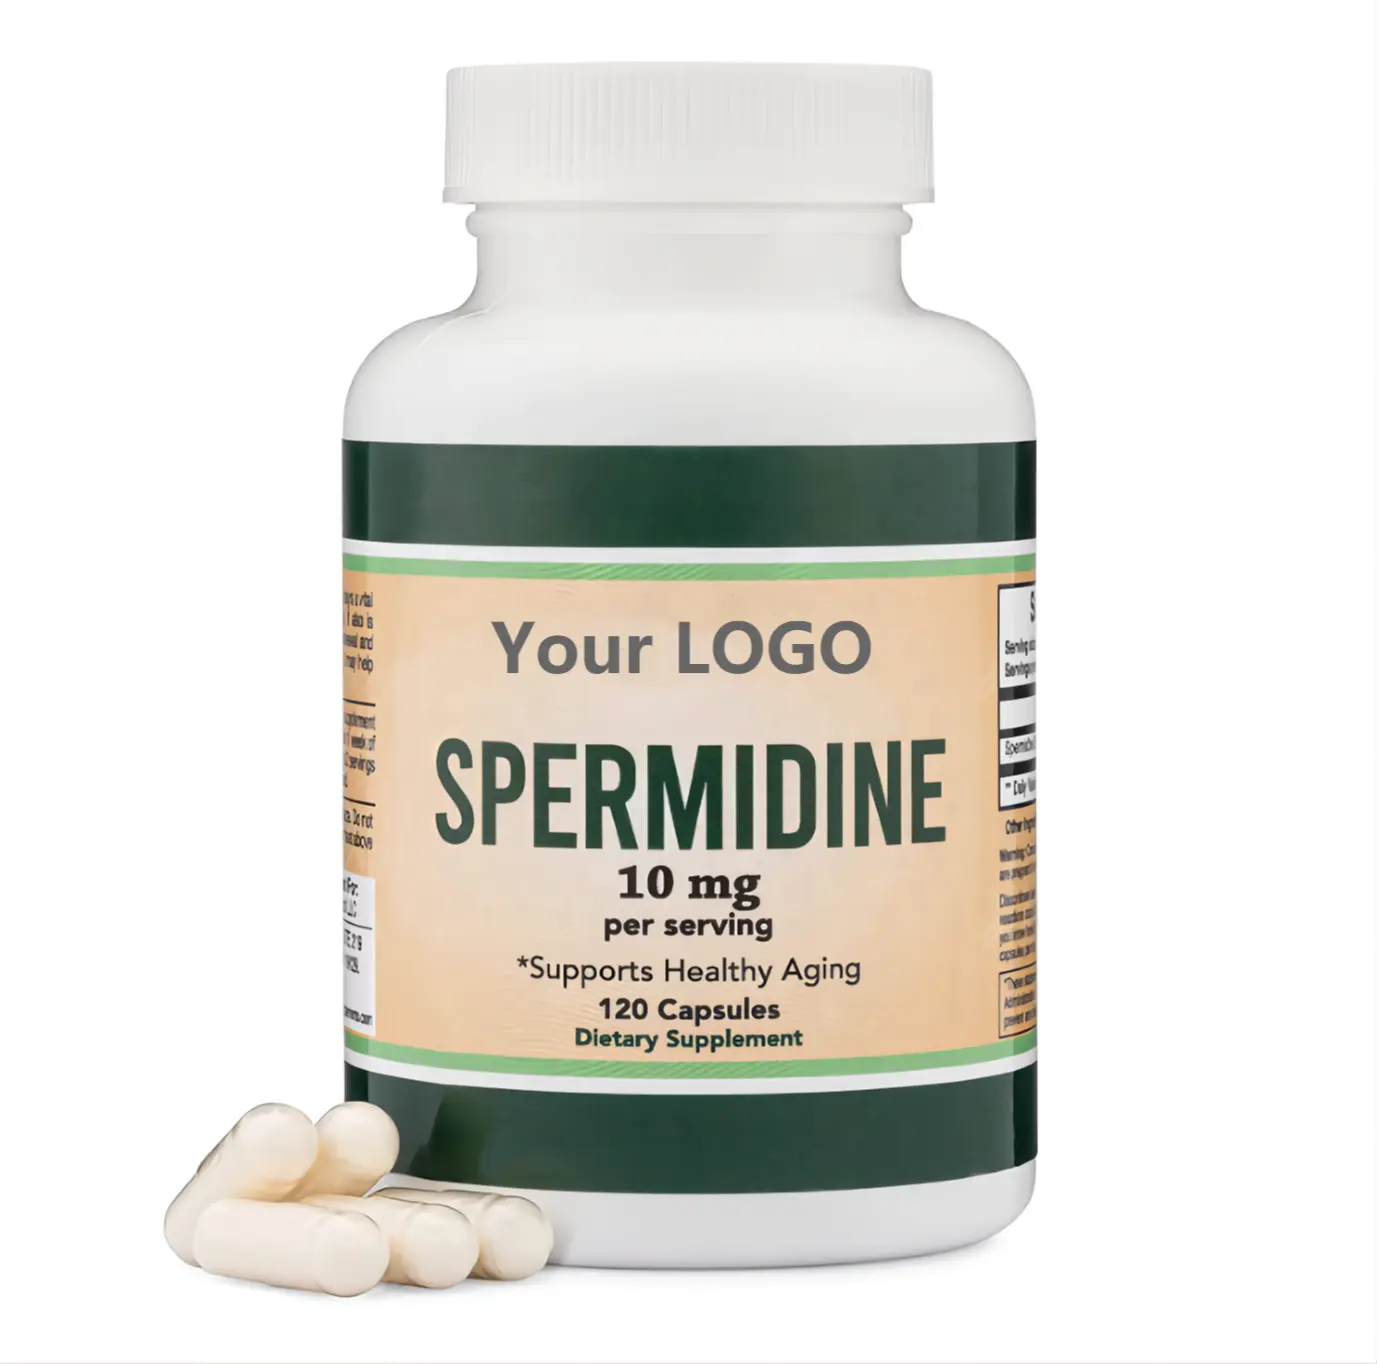 Хорошая цена, спермидиновая добавка для клеточной мембраны, для здоровья и здорового старения, 10 мг, фирменная капсула спермидина